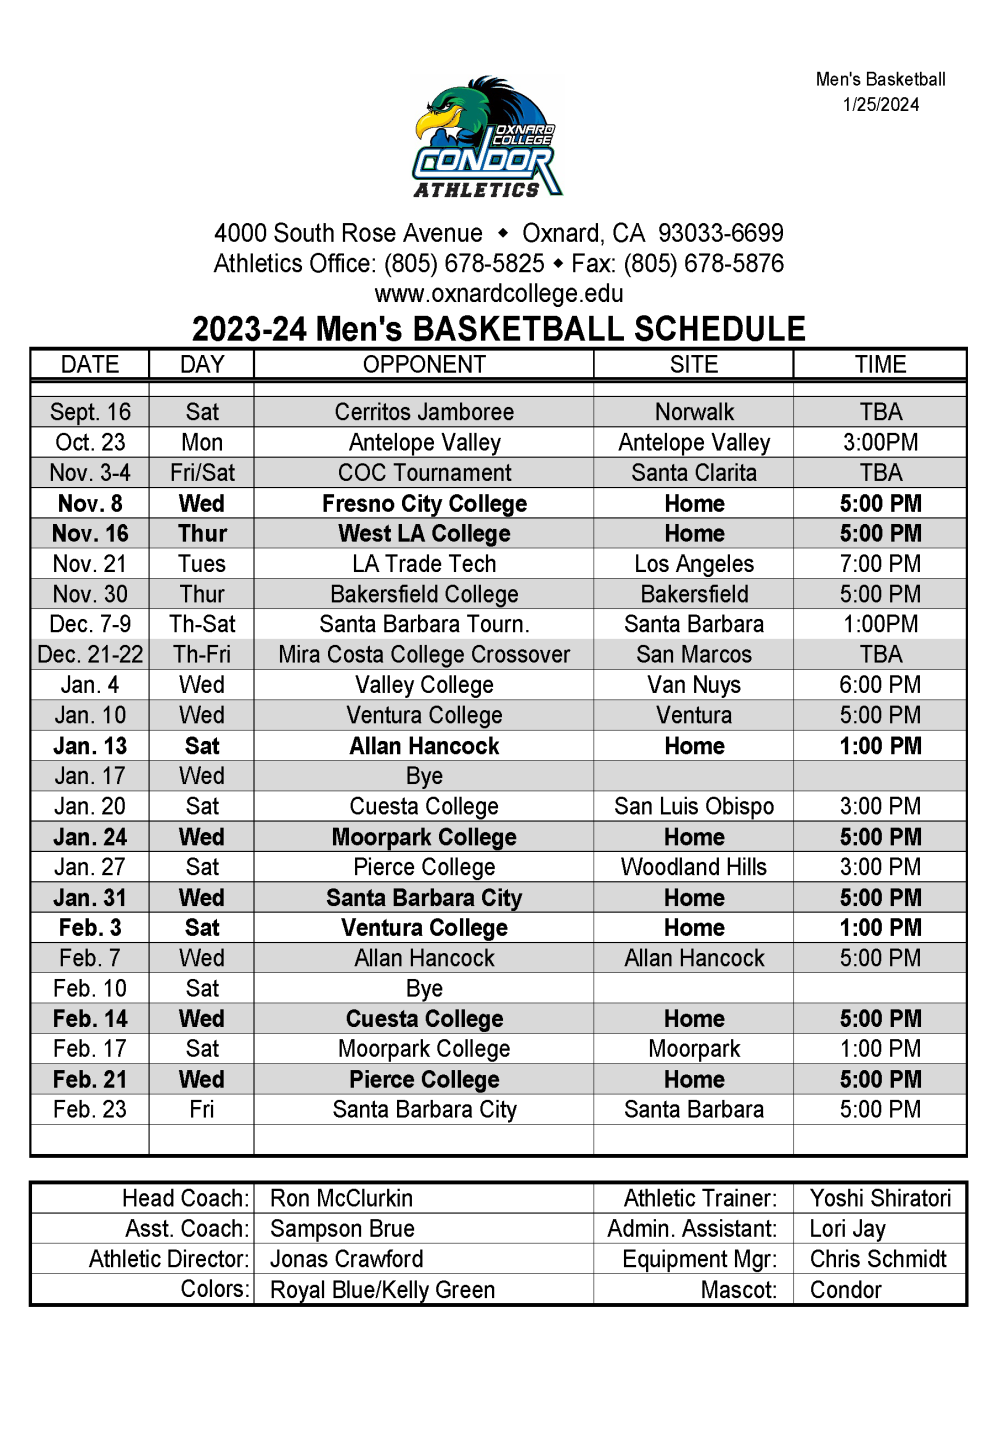 OC Men's Basketball Schedule